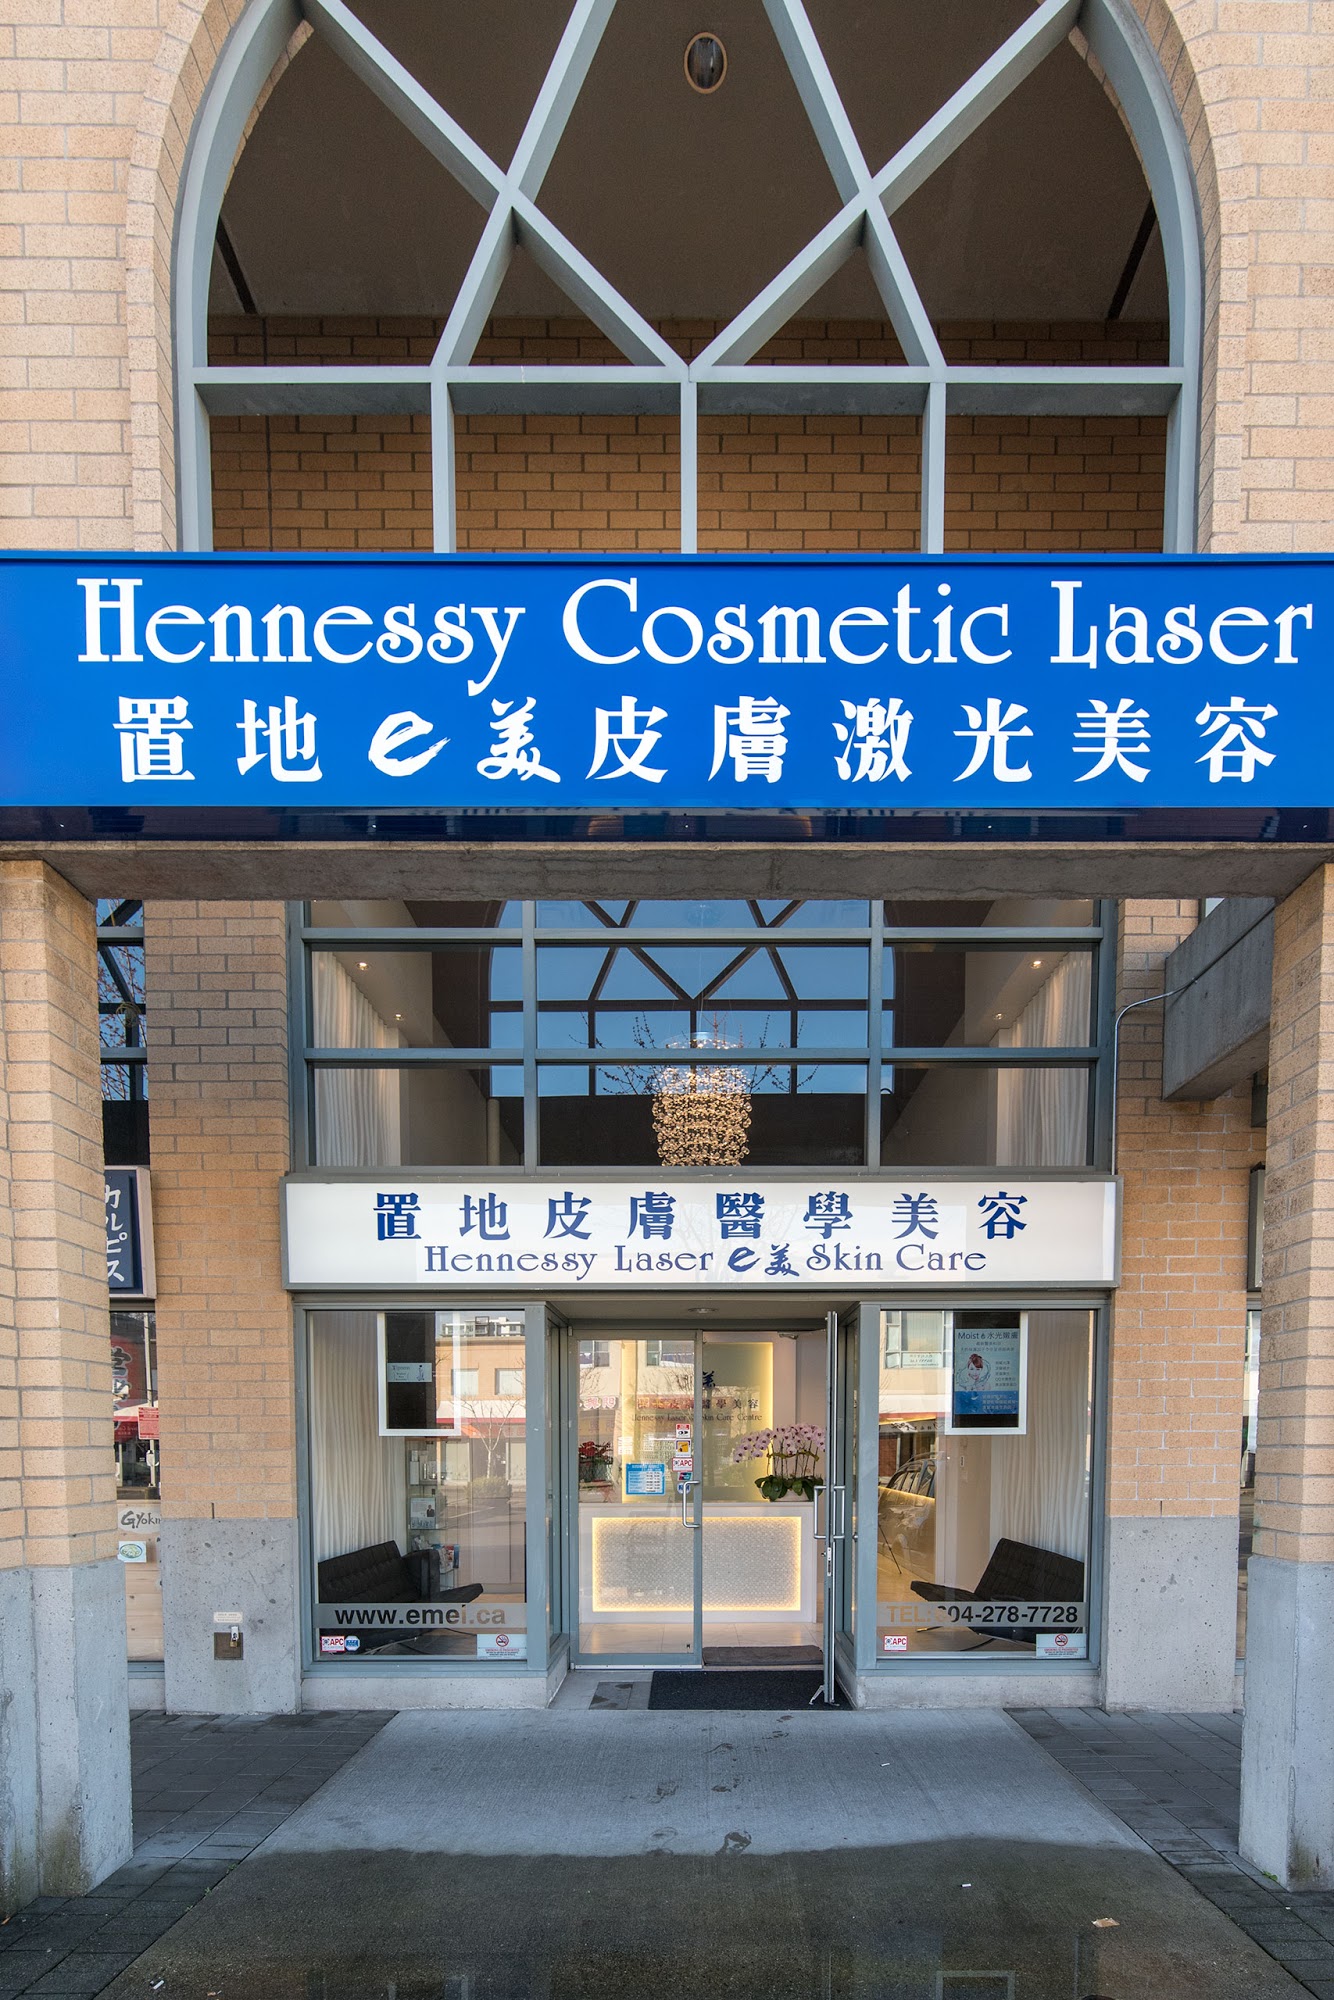 Hennessy laser skin care